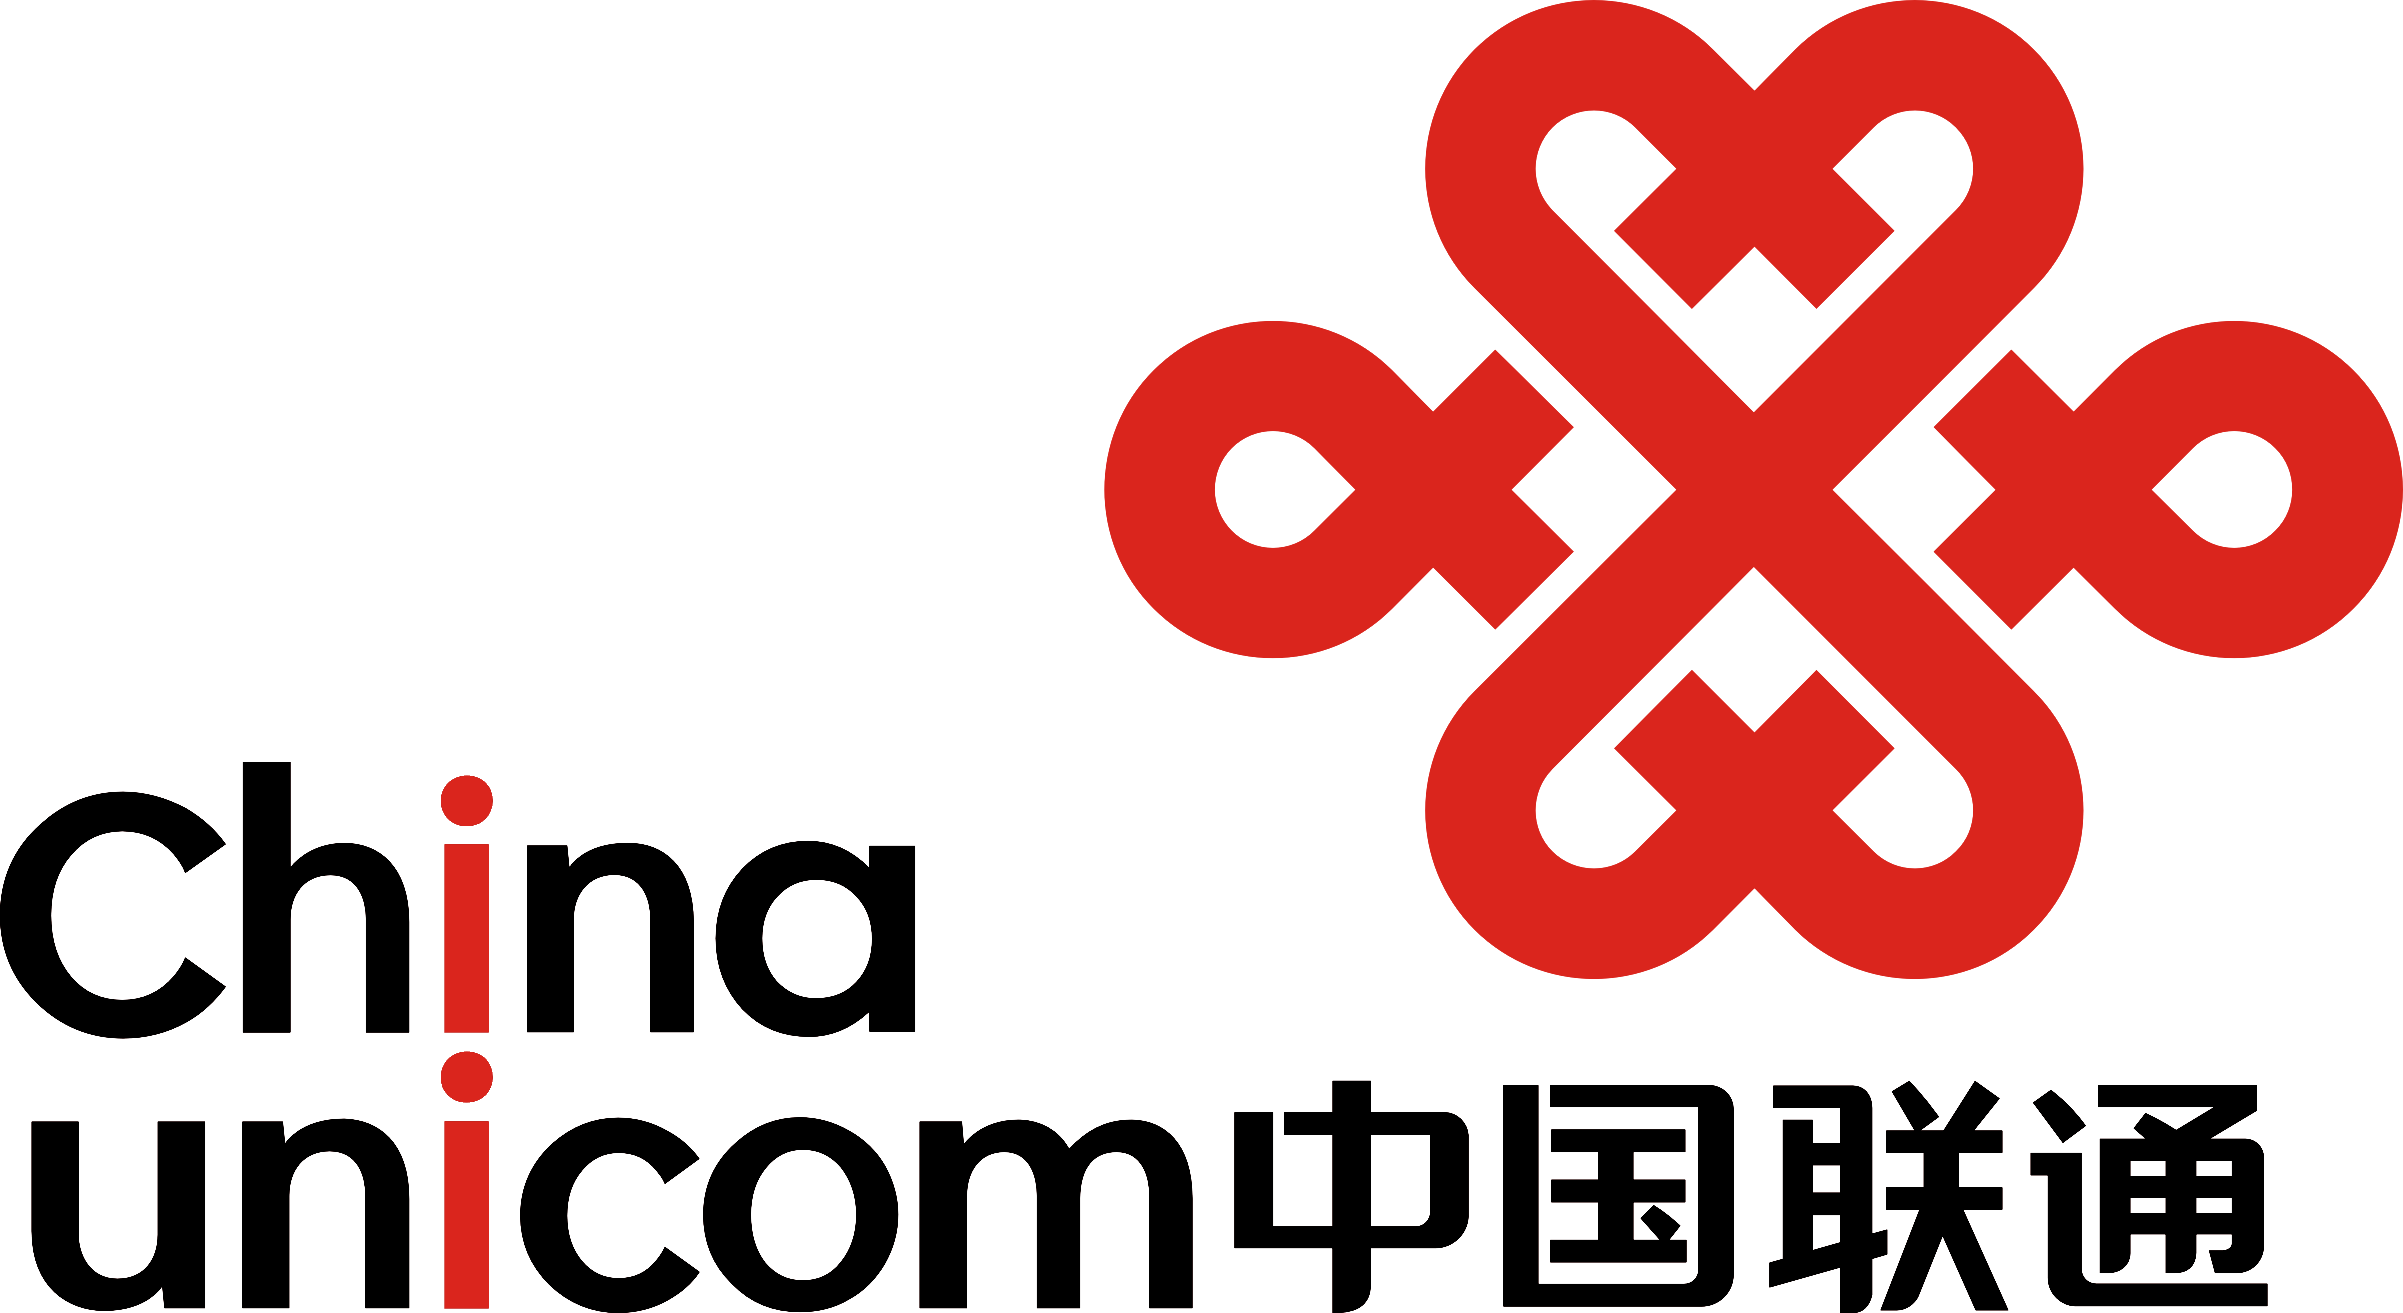 中国联通标志logo大图图片